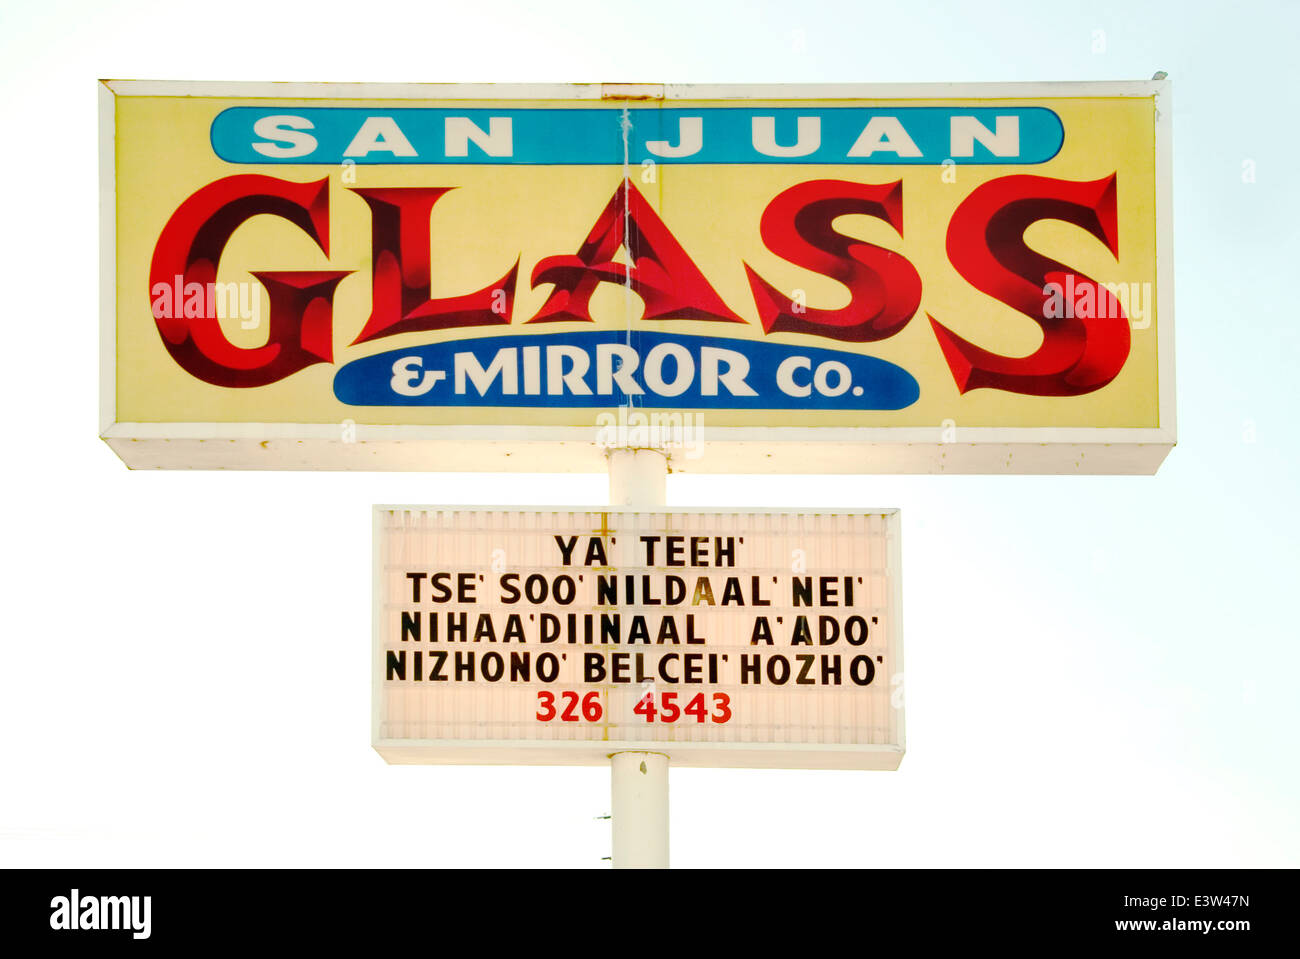 Ein Zeichen in eine phonetische Annäherung an die Sprache der Navajo Indianer wirbt ein Glas und Spiegel-Unternehmen in Farmington, New Mexico. Stockfoto